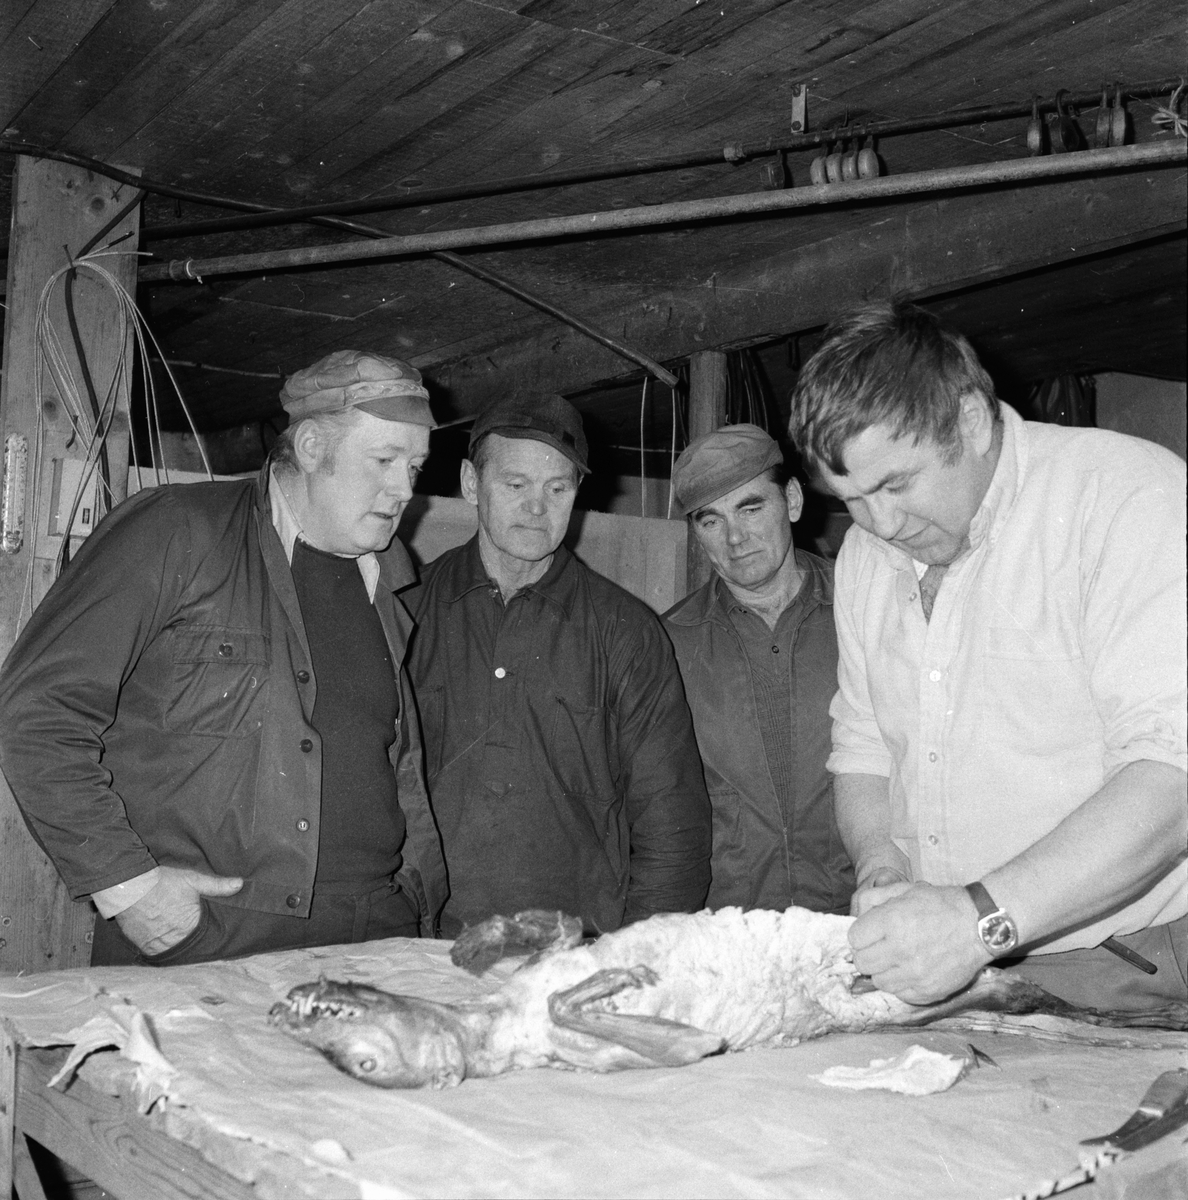 Jaktvårdarna på Nyhem.
November 1974